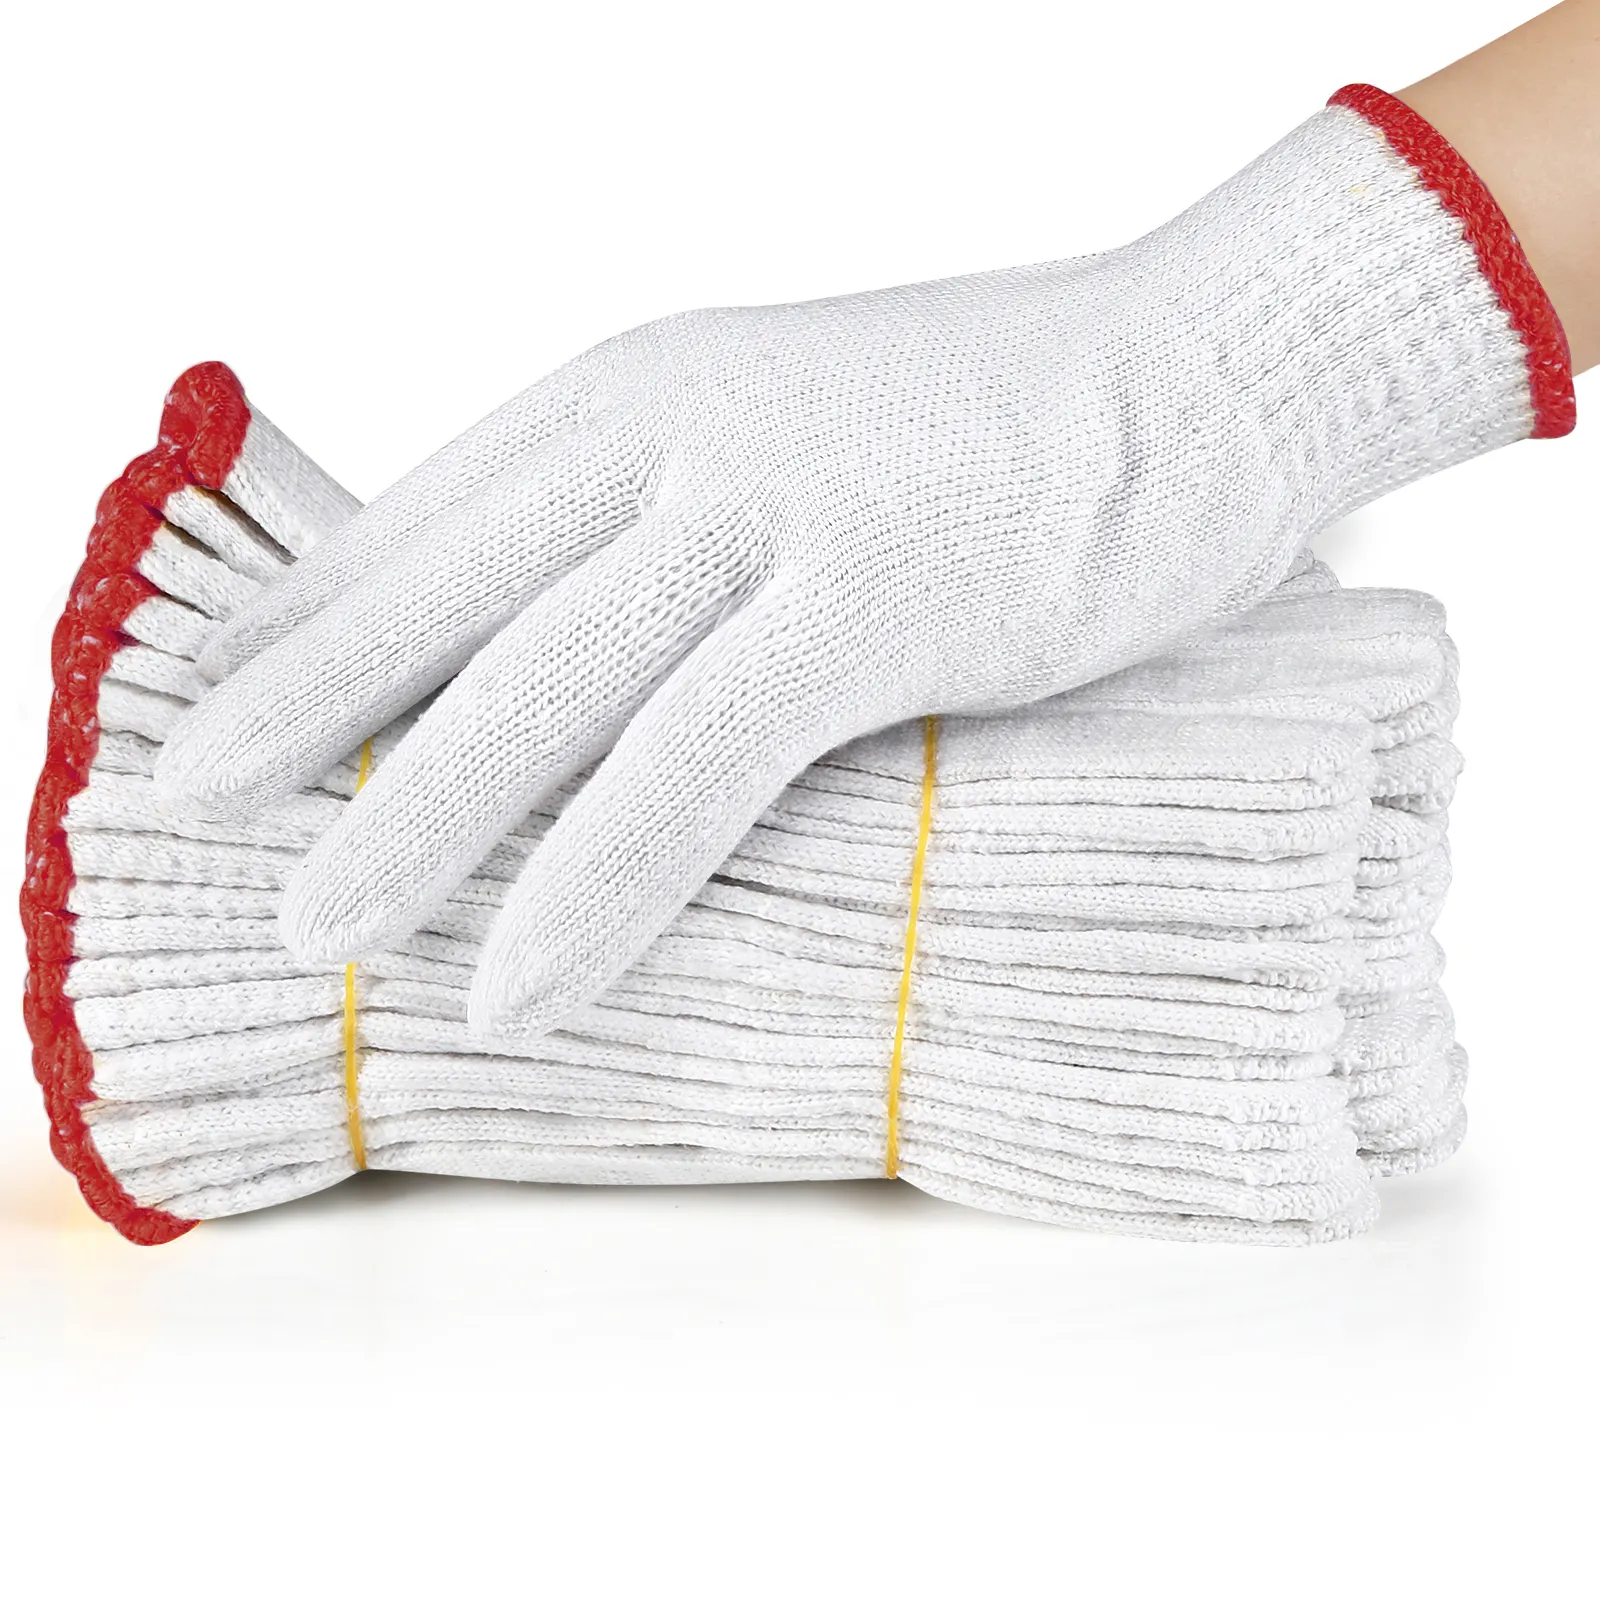 ถุงมือผ้าฝ้ายถัก30-60กรัม/คู่ถุงมือเซฟตี้ถุงมือทำงาน